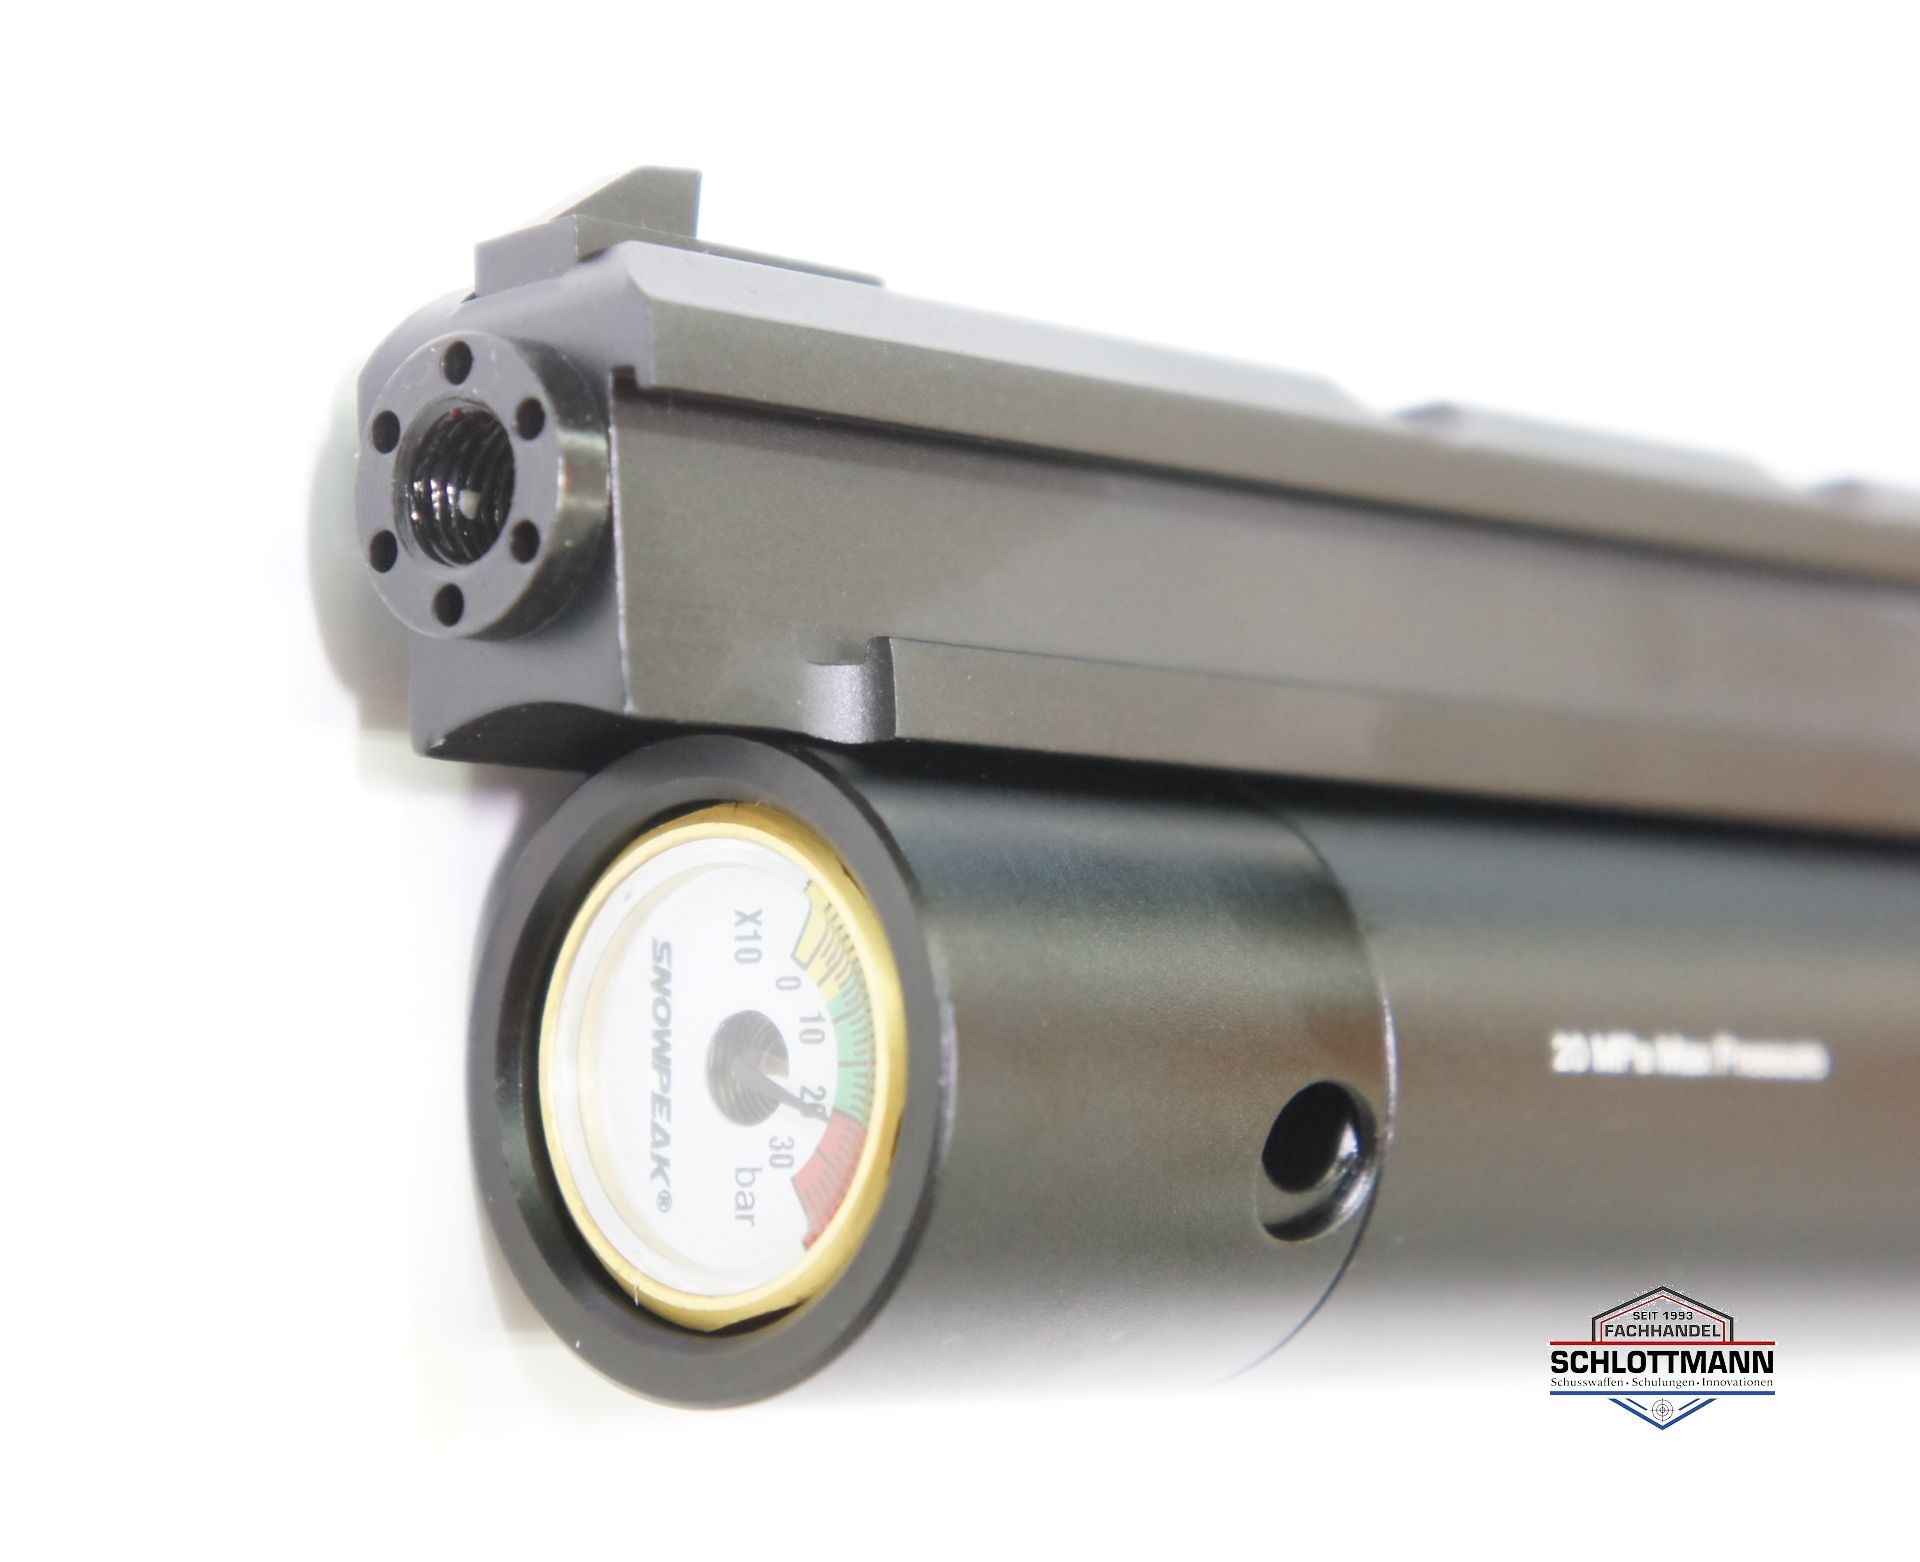 An der Luftpistole airmaX PP700S-A kann mittels Adapter auch ein Schaldämpfer befestigt werden.